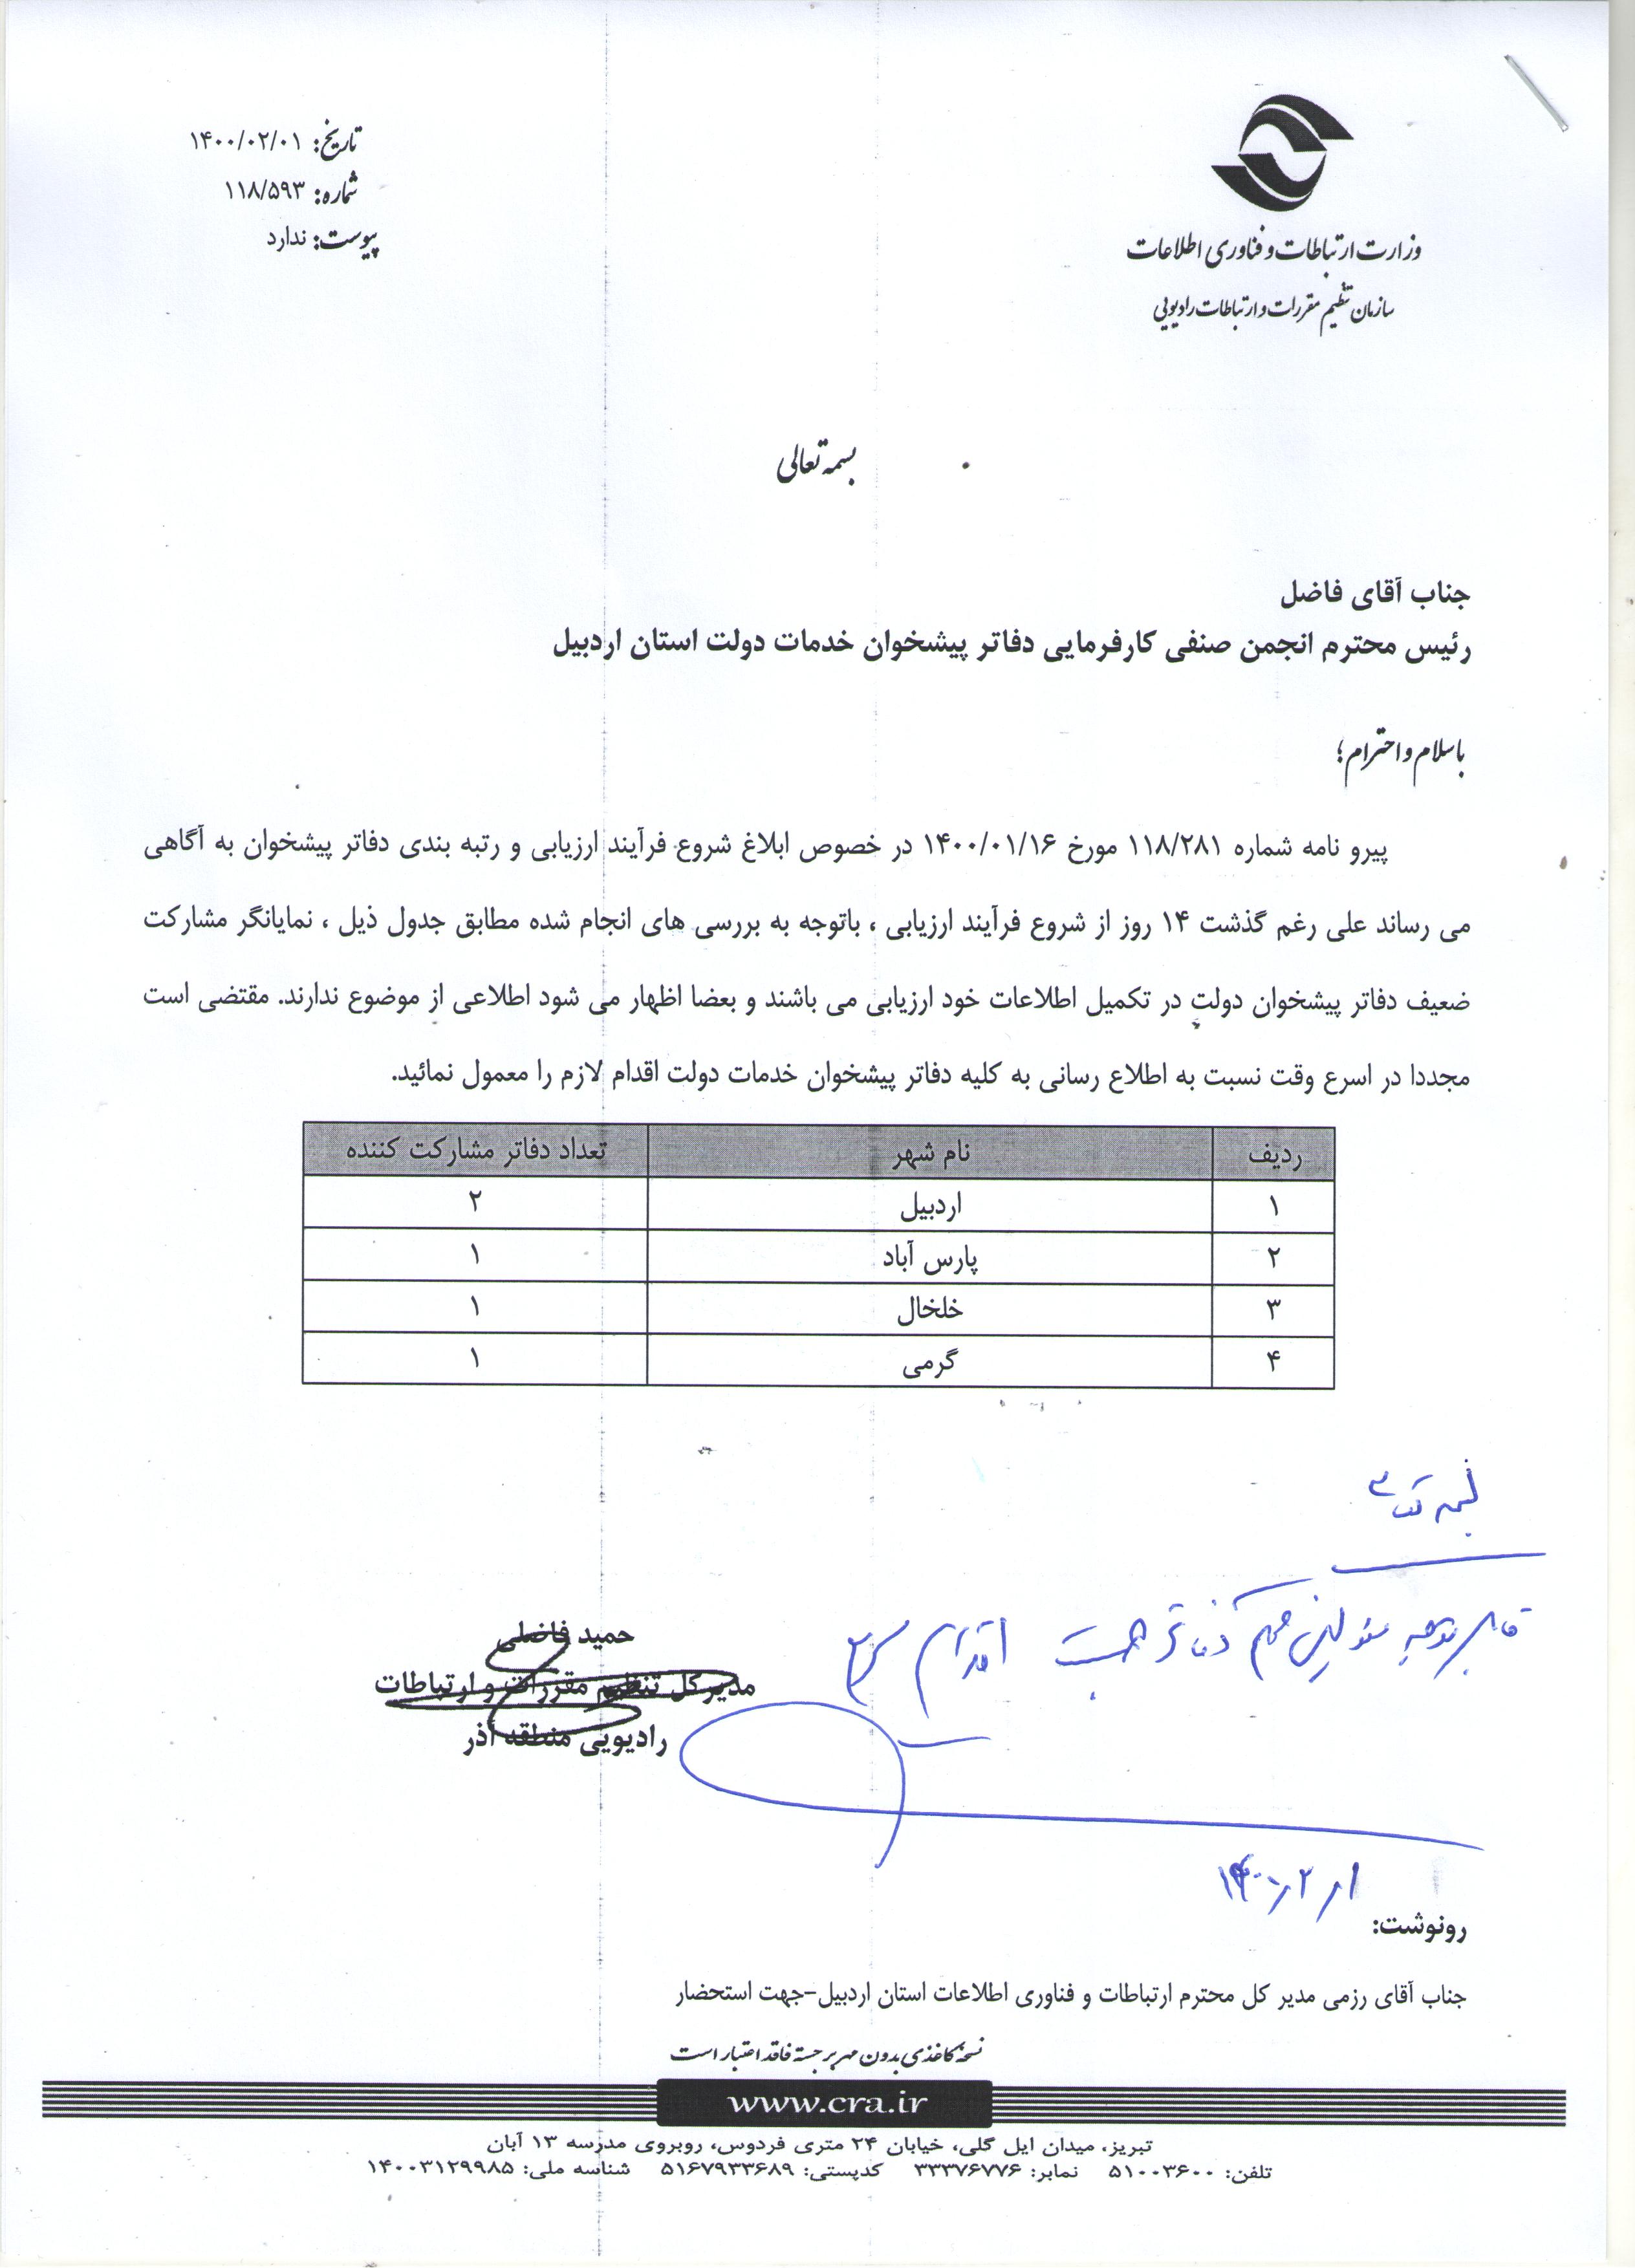 قابل توجه کلیه مسئولین محترم دفاتر پیشخوان خدمات دولت استان اردبیل-جهت اقدام سریع در ارزیابی دفاتر